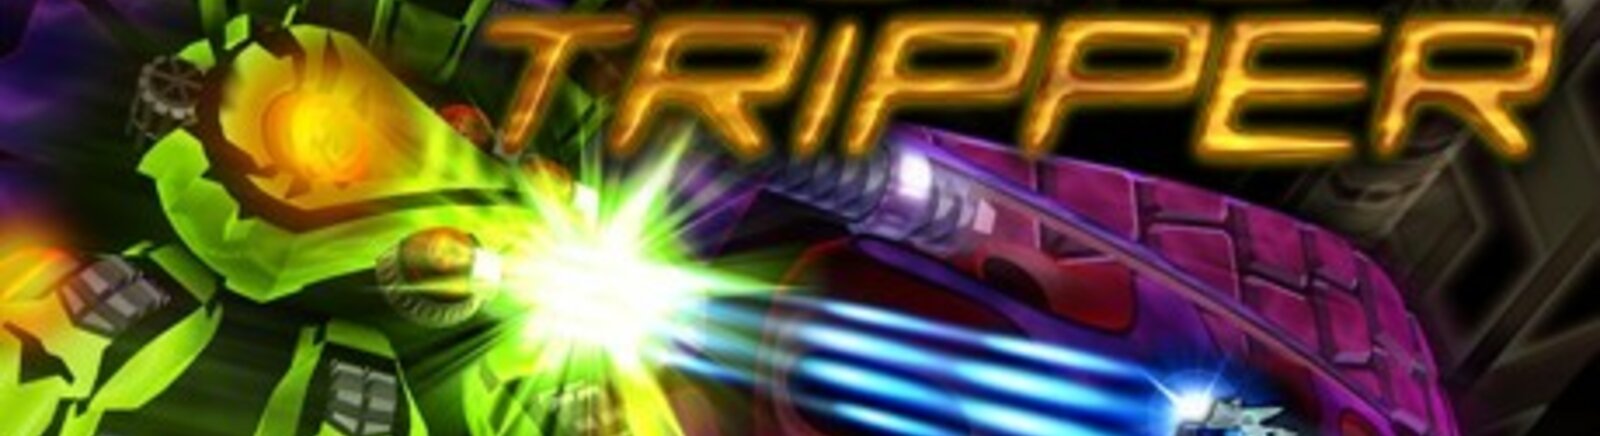 Дата выхода Astro Tripper  на PC и PS3 в России и во всем мире